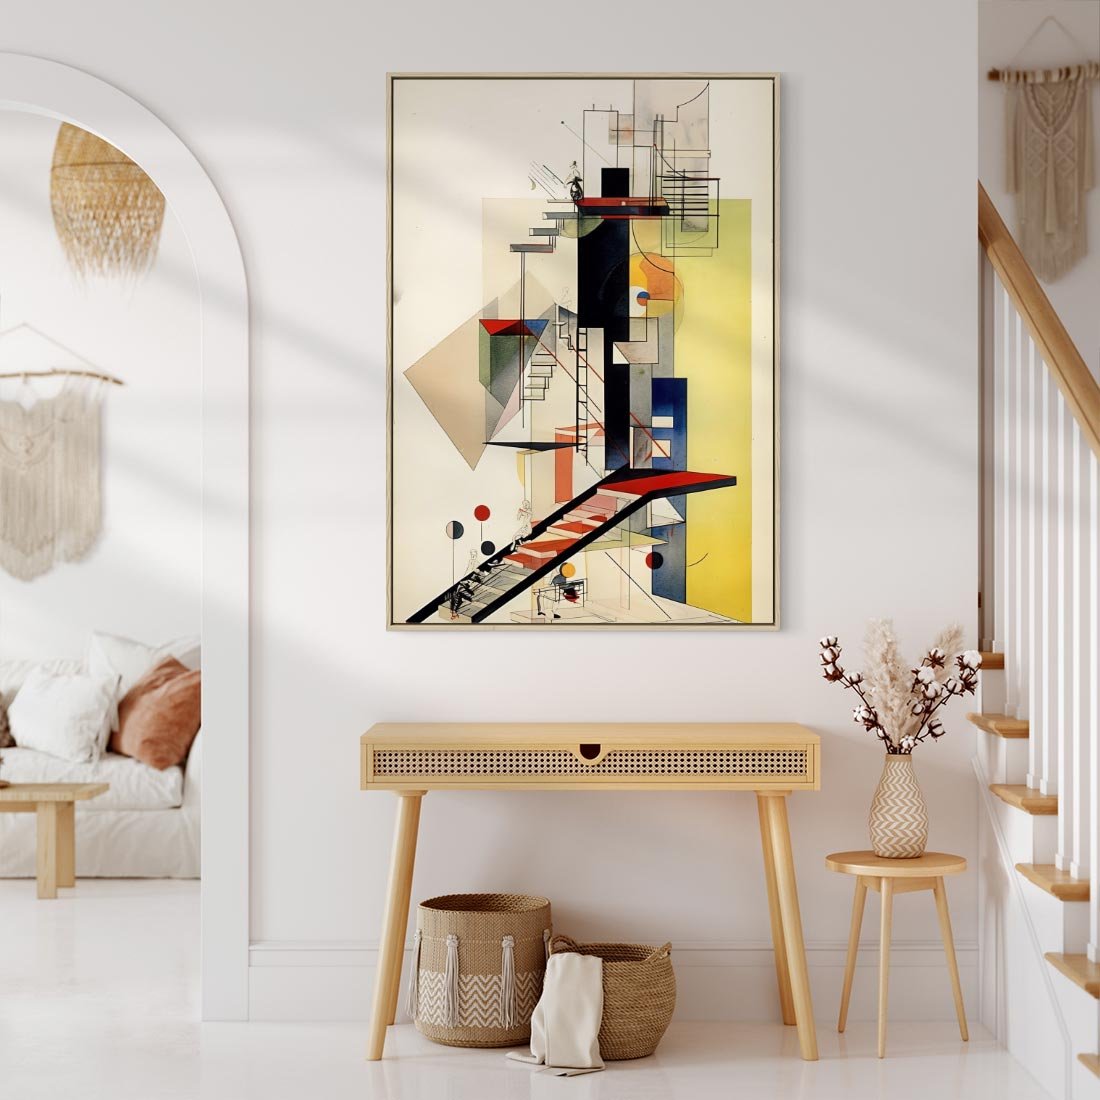 Obraz w ramie 50x70 - Kolorowe Wnętrza Inspiracji - abstrakcyjny obraz, jak kandinsky - rama drewno